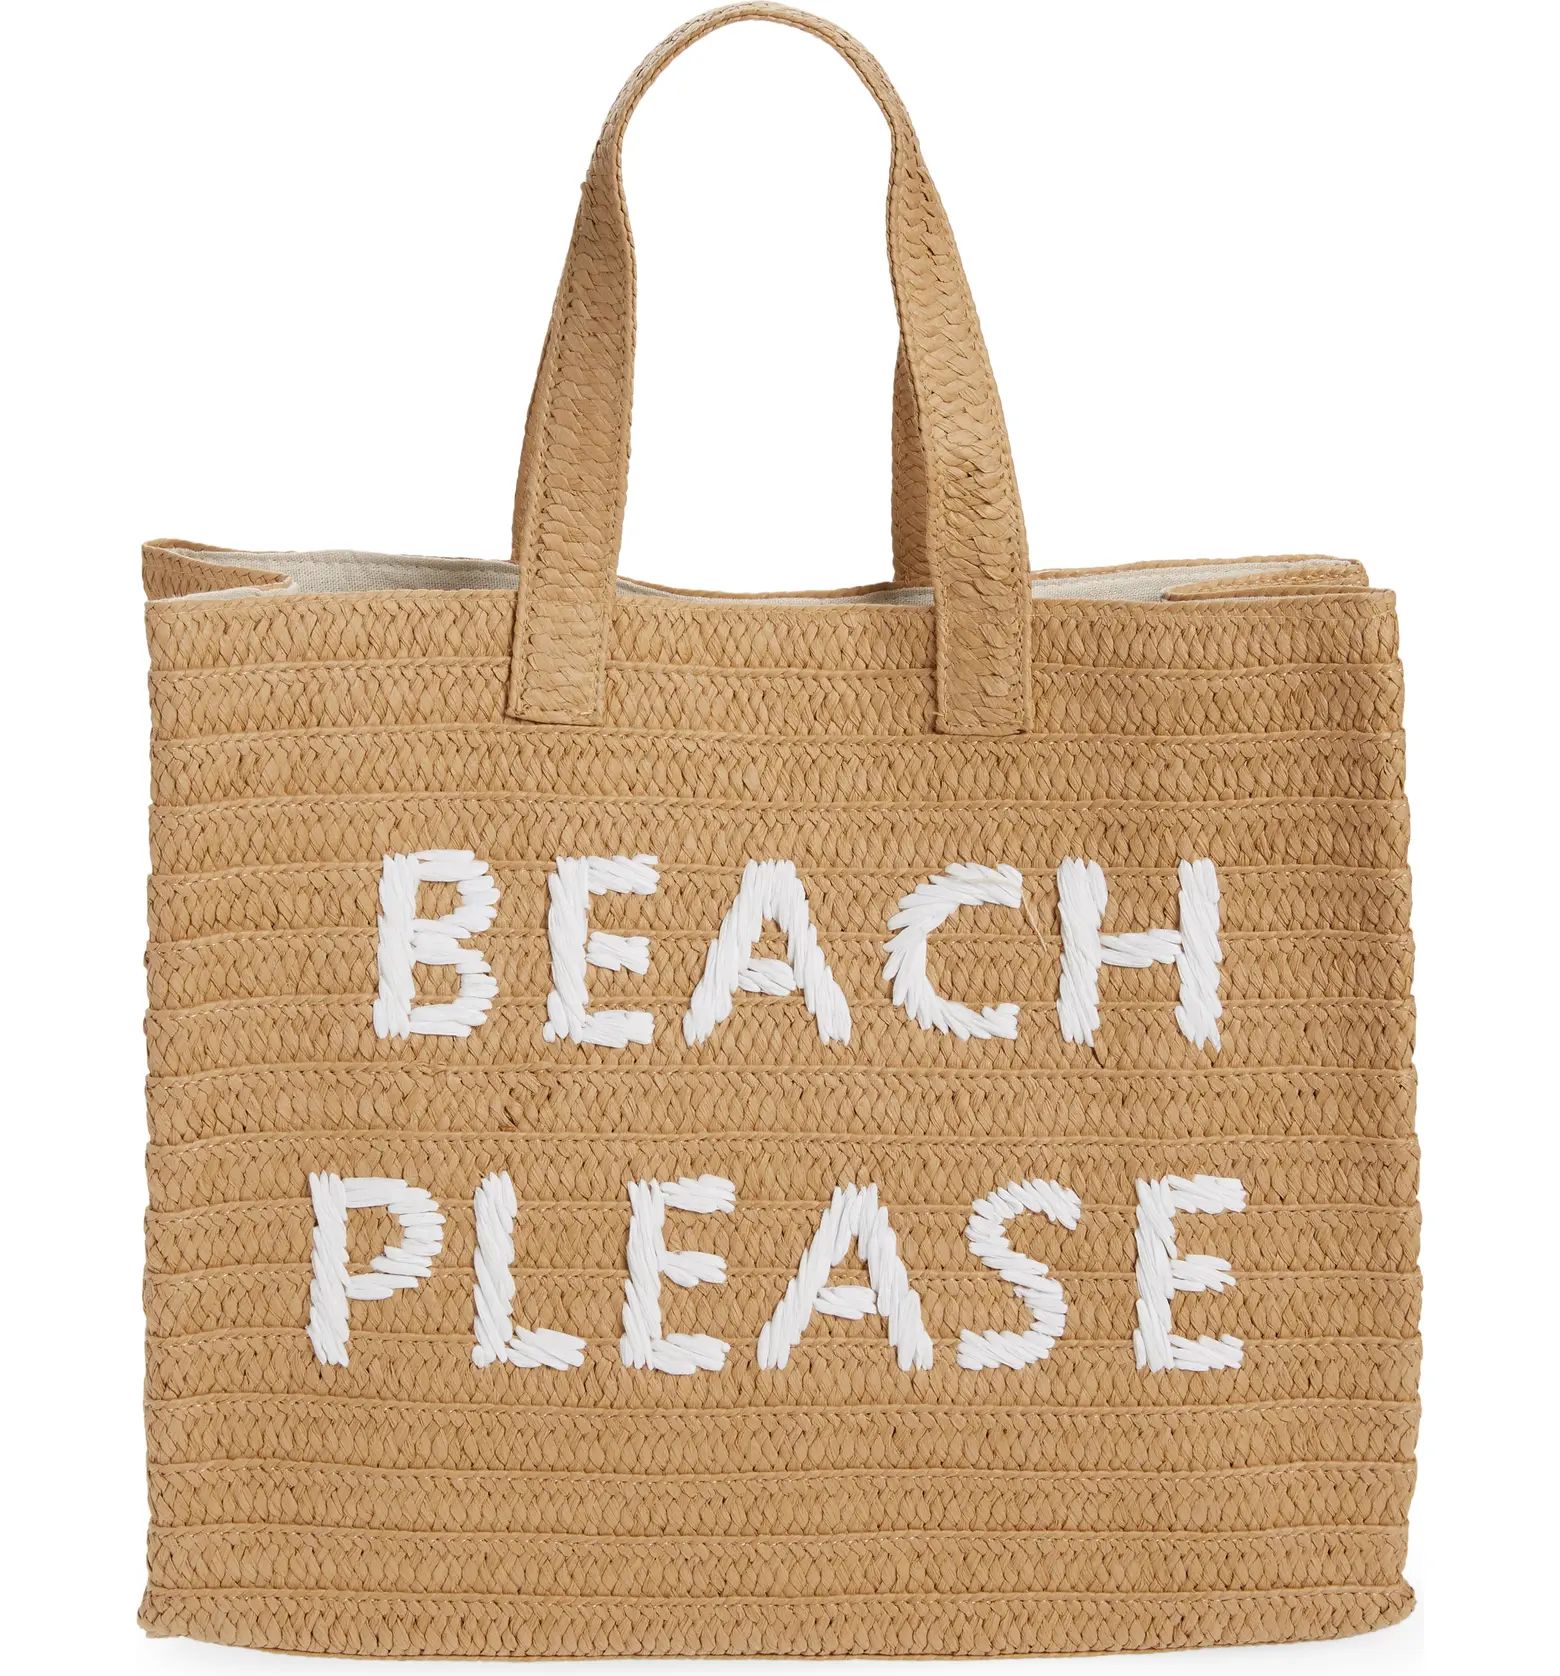 btb Los Angeles Beach Please Tote Bag | Nordstromrack | Nordstrom Rack